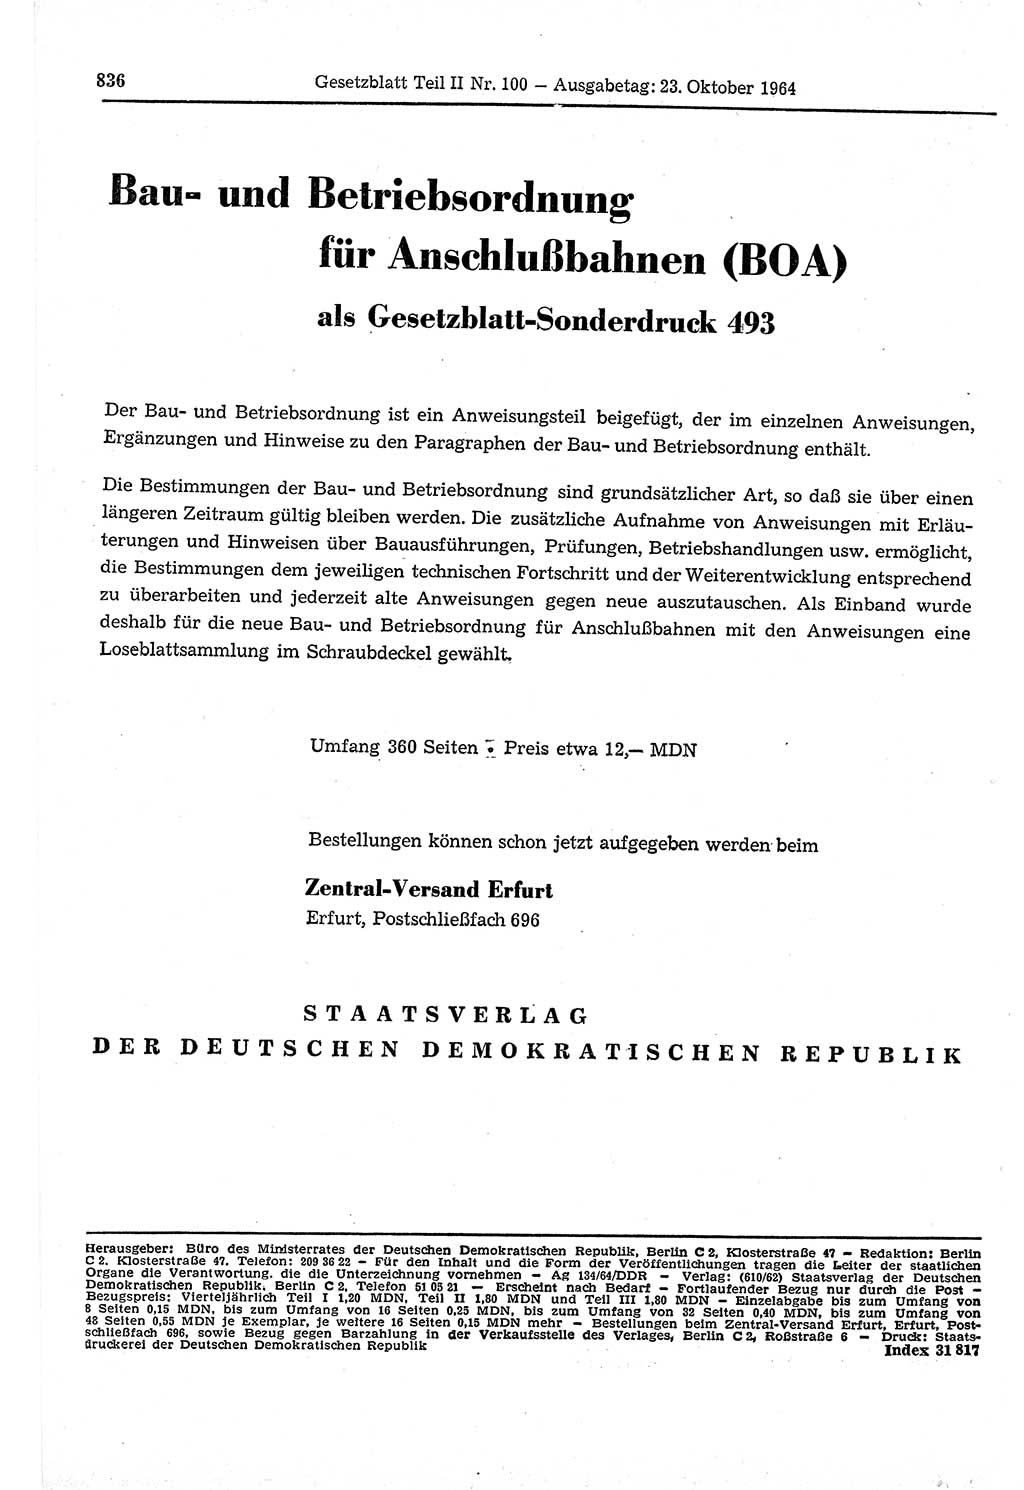 Gesetzblatt (GBl.) der Deutschen Demokratischen Republik (DDR) Teil ⅠⅠ 1964, Seite 836 (GBl. DDR ⅠⅠ 1964, S. 836)